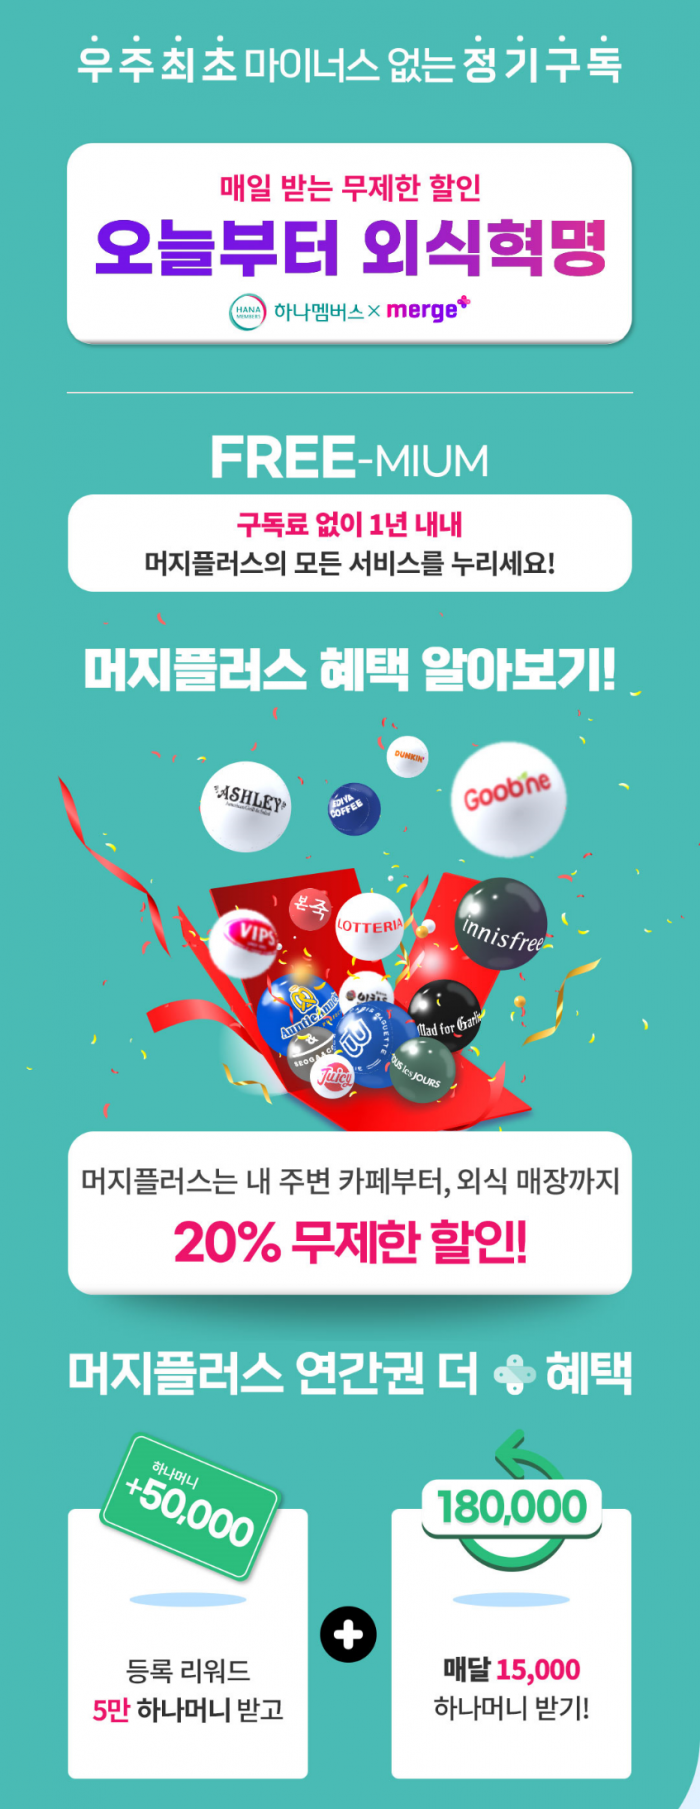 하나멤버스 ‘머지플러스 연간권 제휴 판매 이벤트’ 기사의 사진